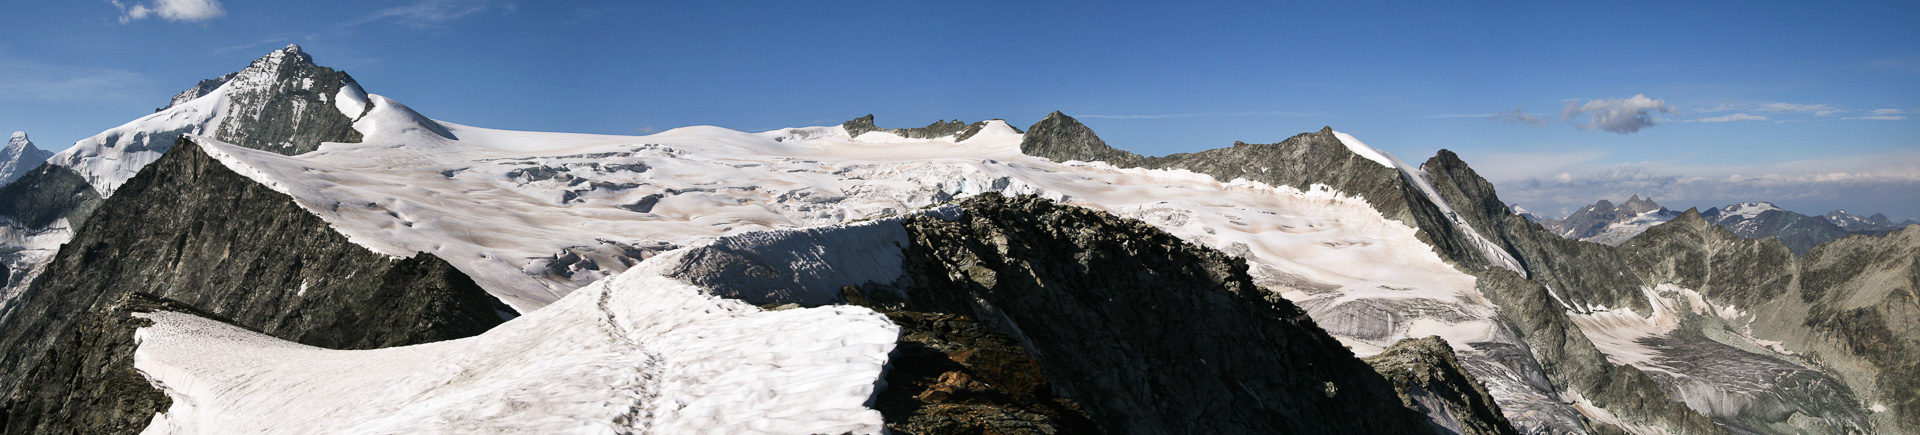 über den Glacier de Moiry führte der Weg.